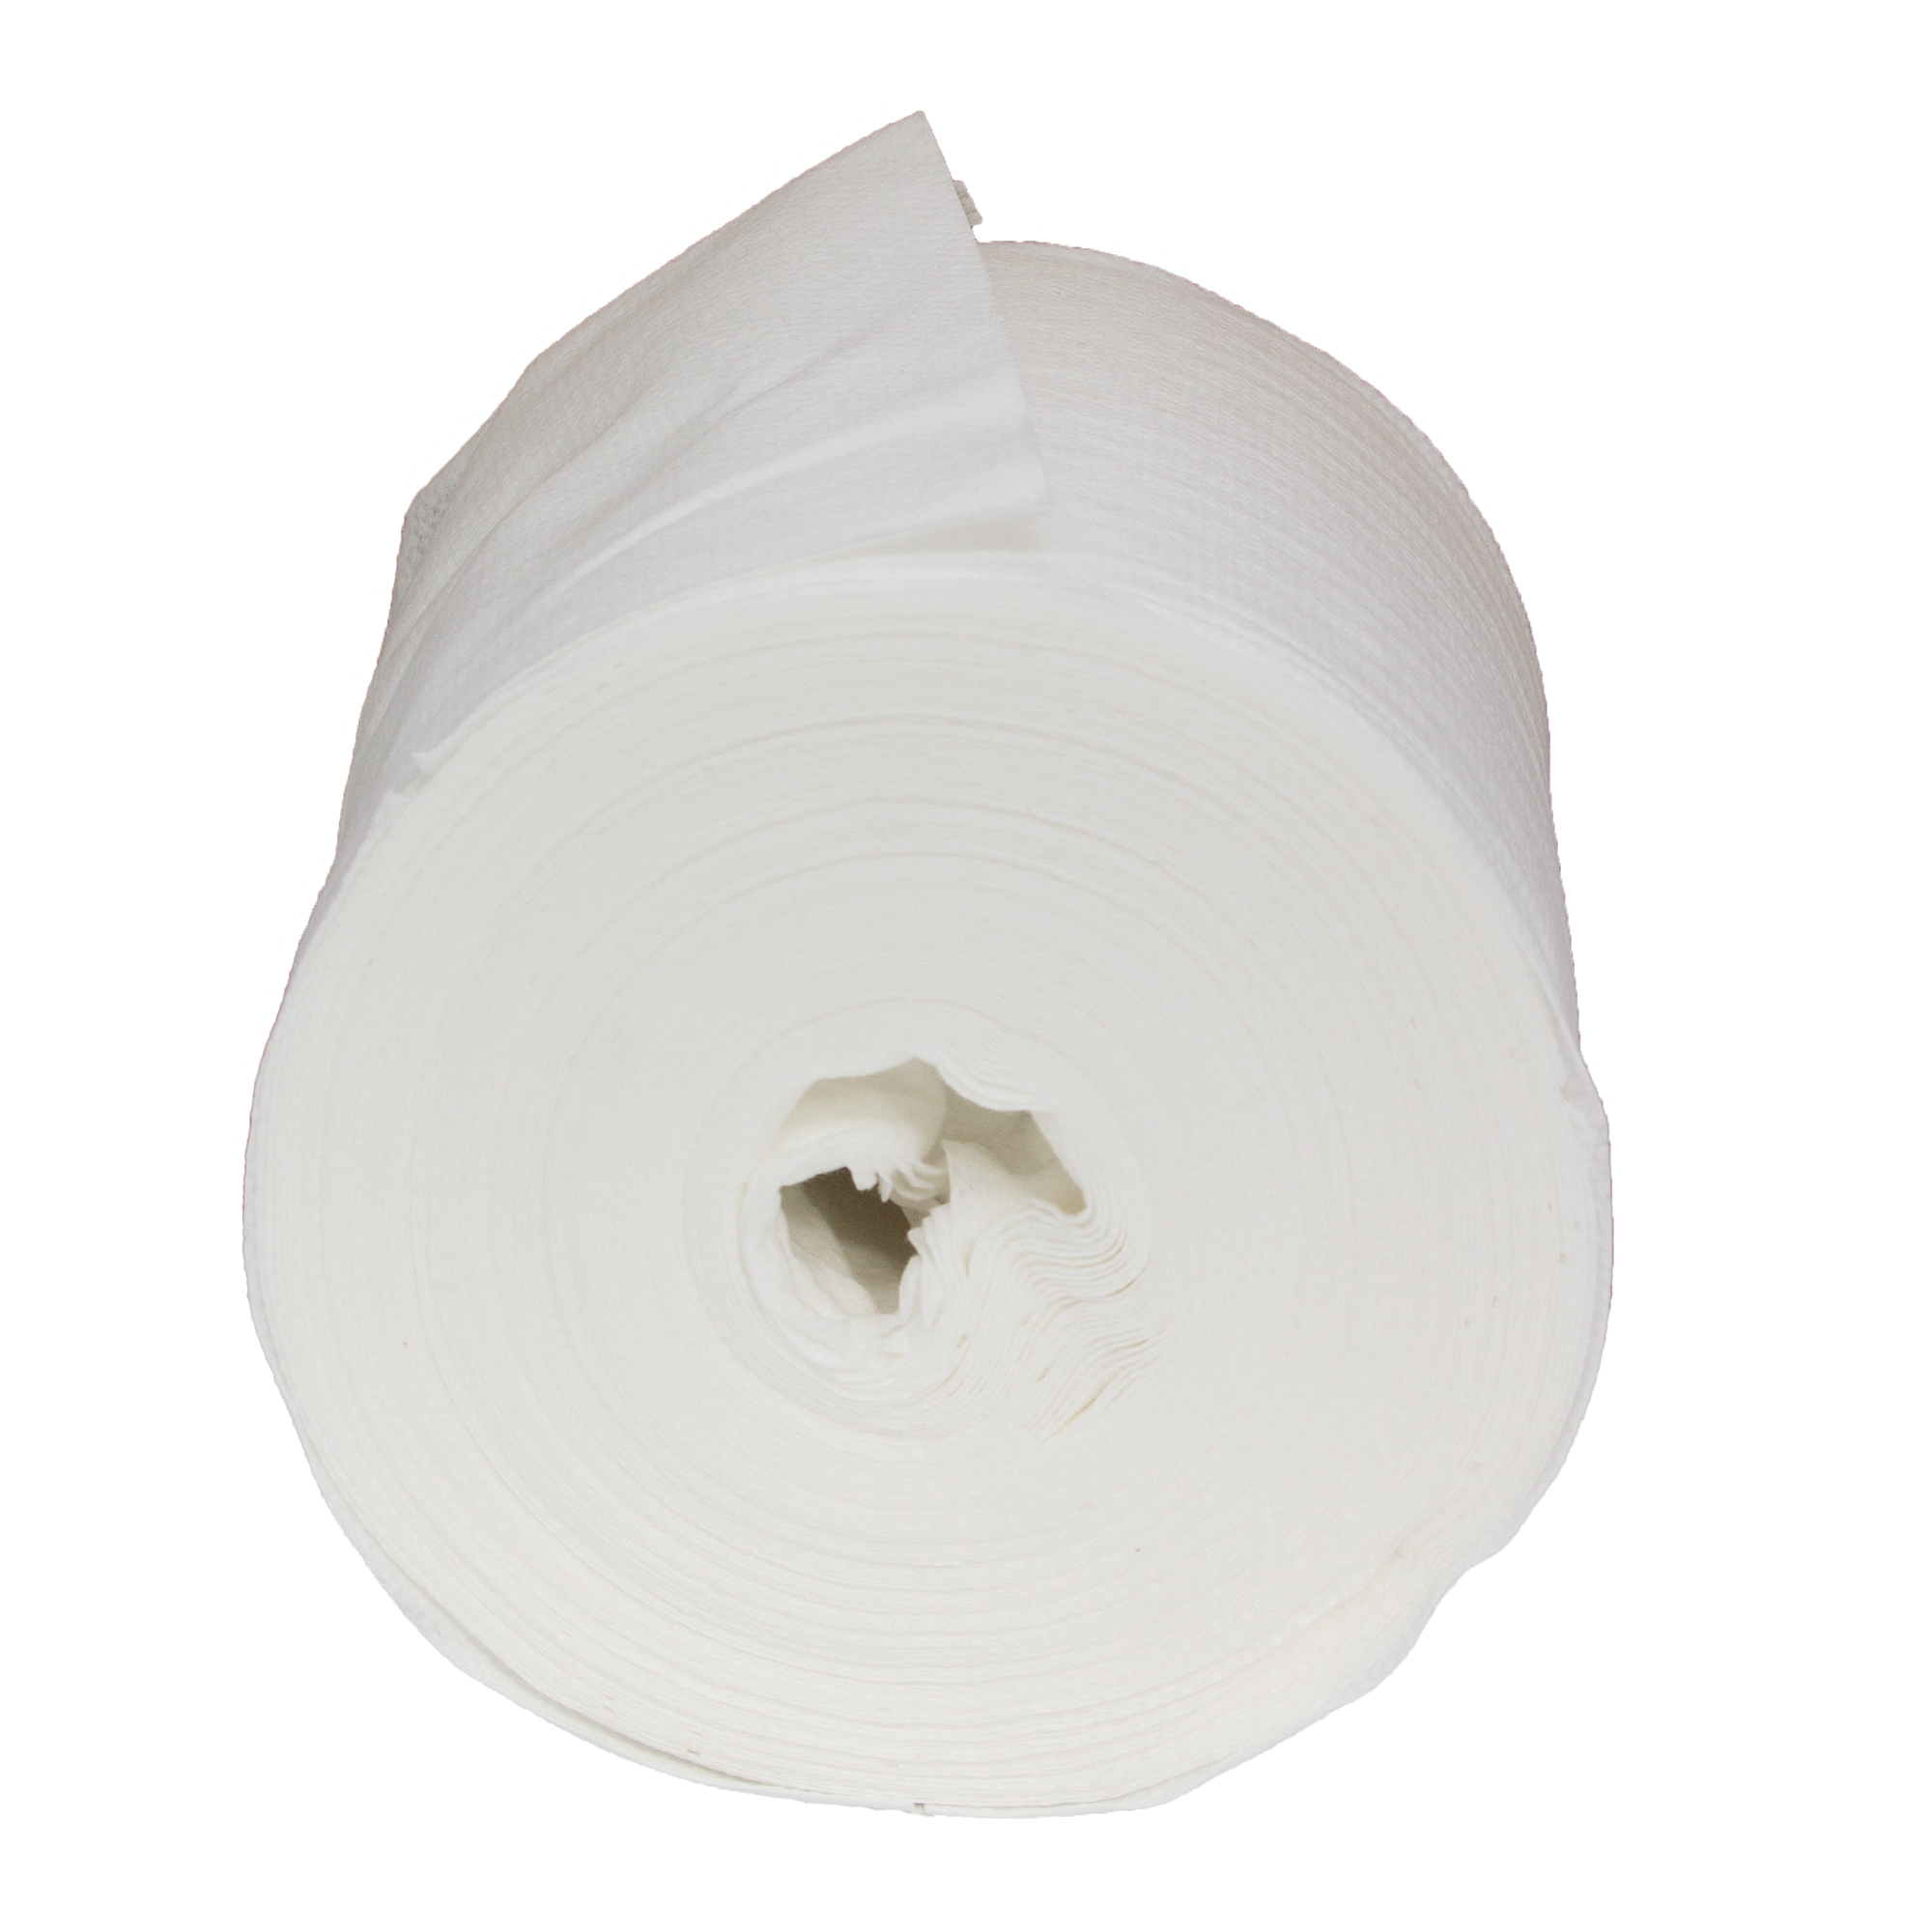 WypAll 7753 Wettask fusselarme Reinigungstücher für Lösungsmittel, weiß, 30,5 cm breit, 6 x 120 Tücher